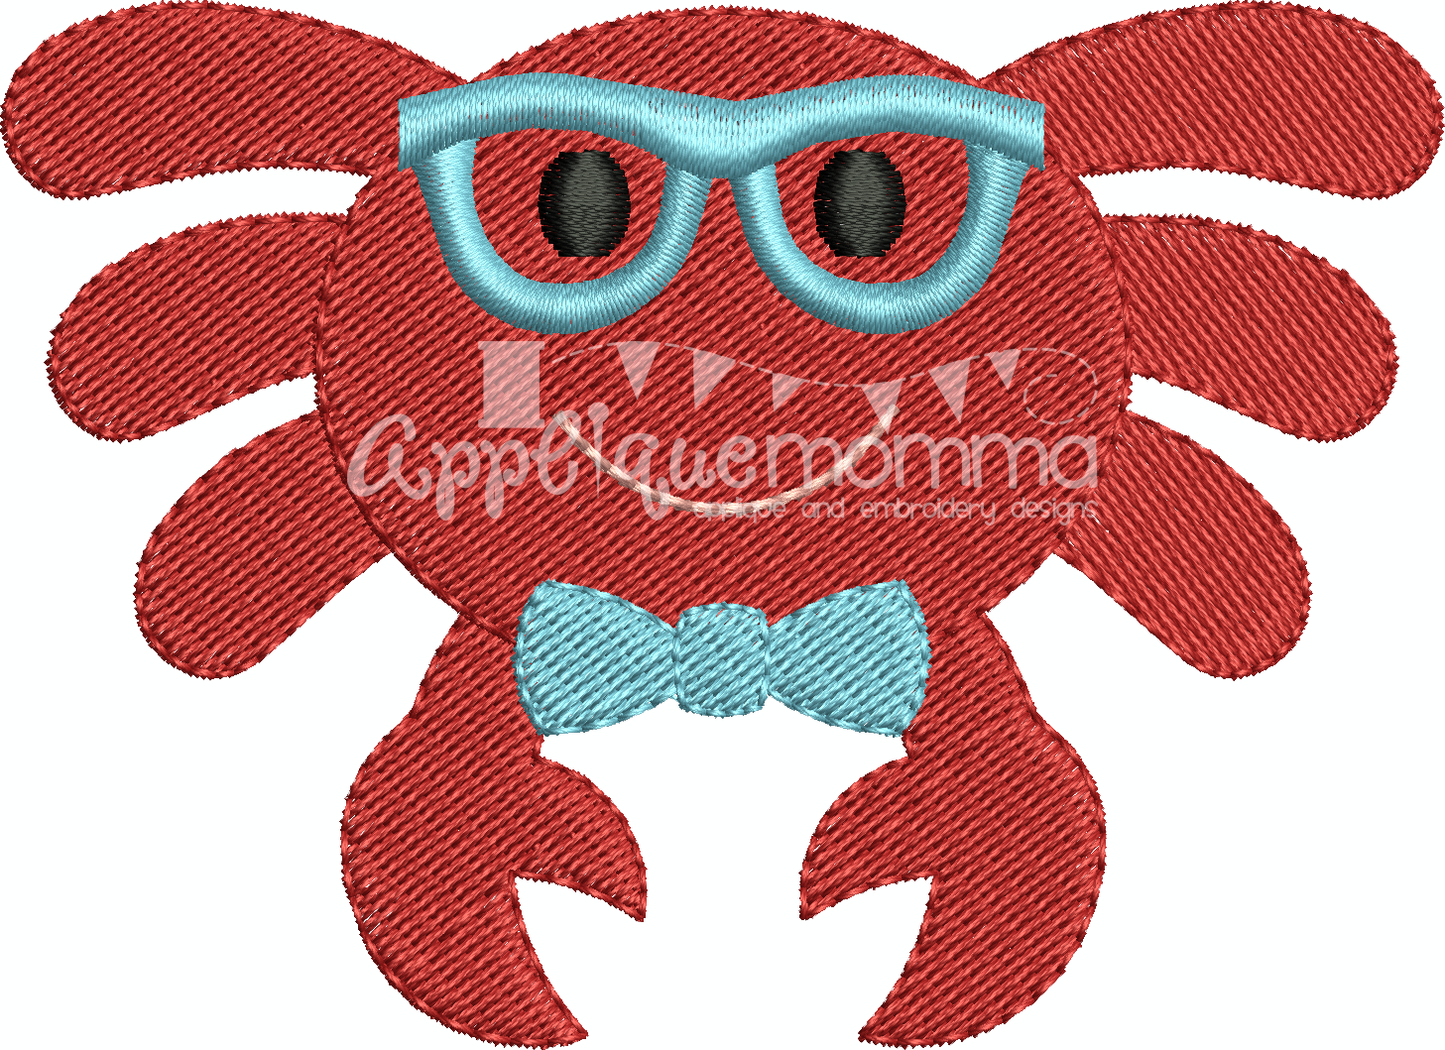 Mr. Crab Mini Embroidery Design